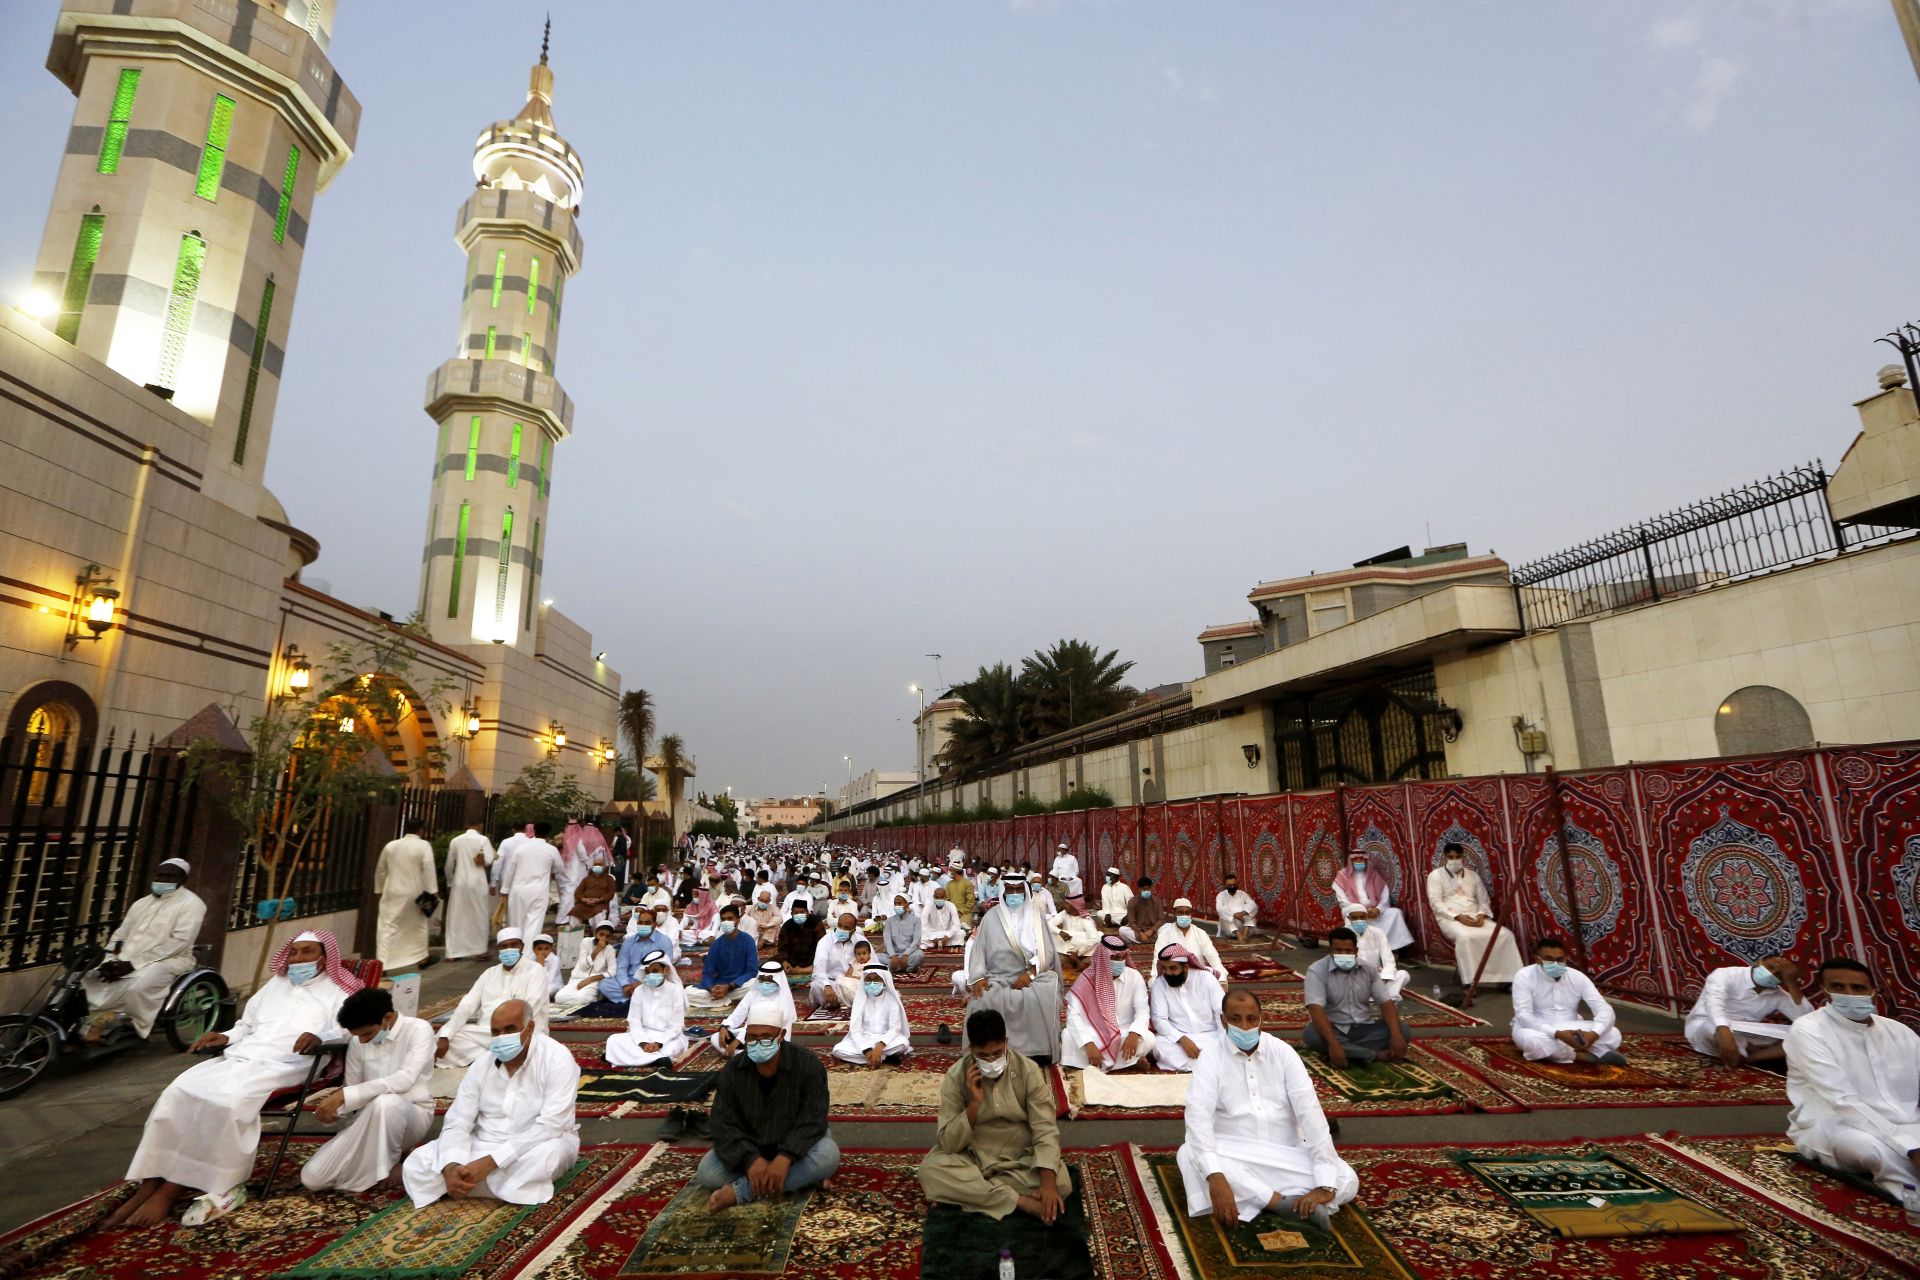  Мюсюлманите означават края на свещения постния месец Рамадан в джамията Ал-Мираби в Джида, Саудитска Арабия 